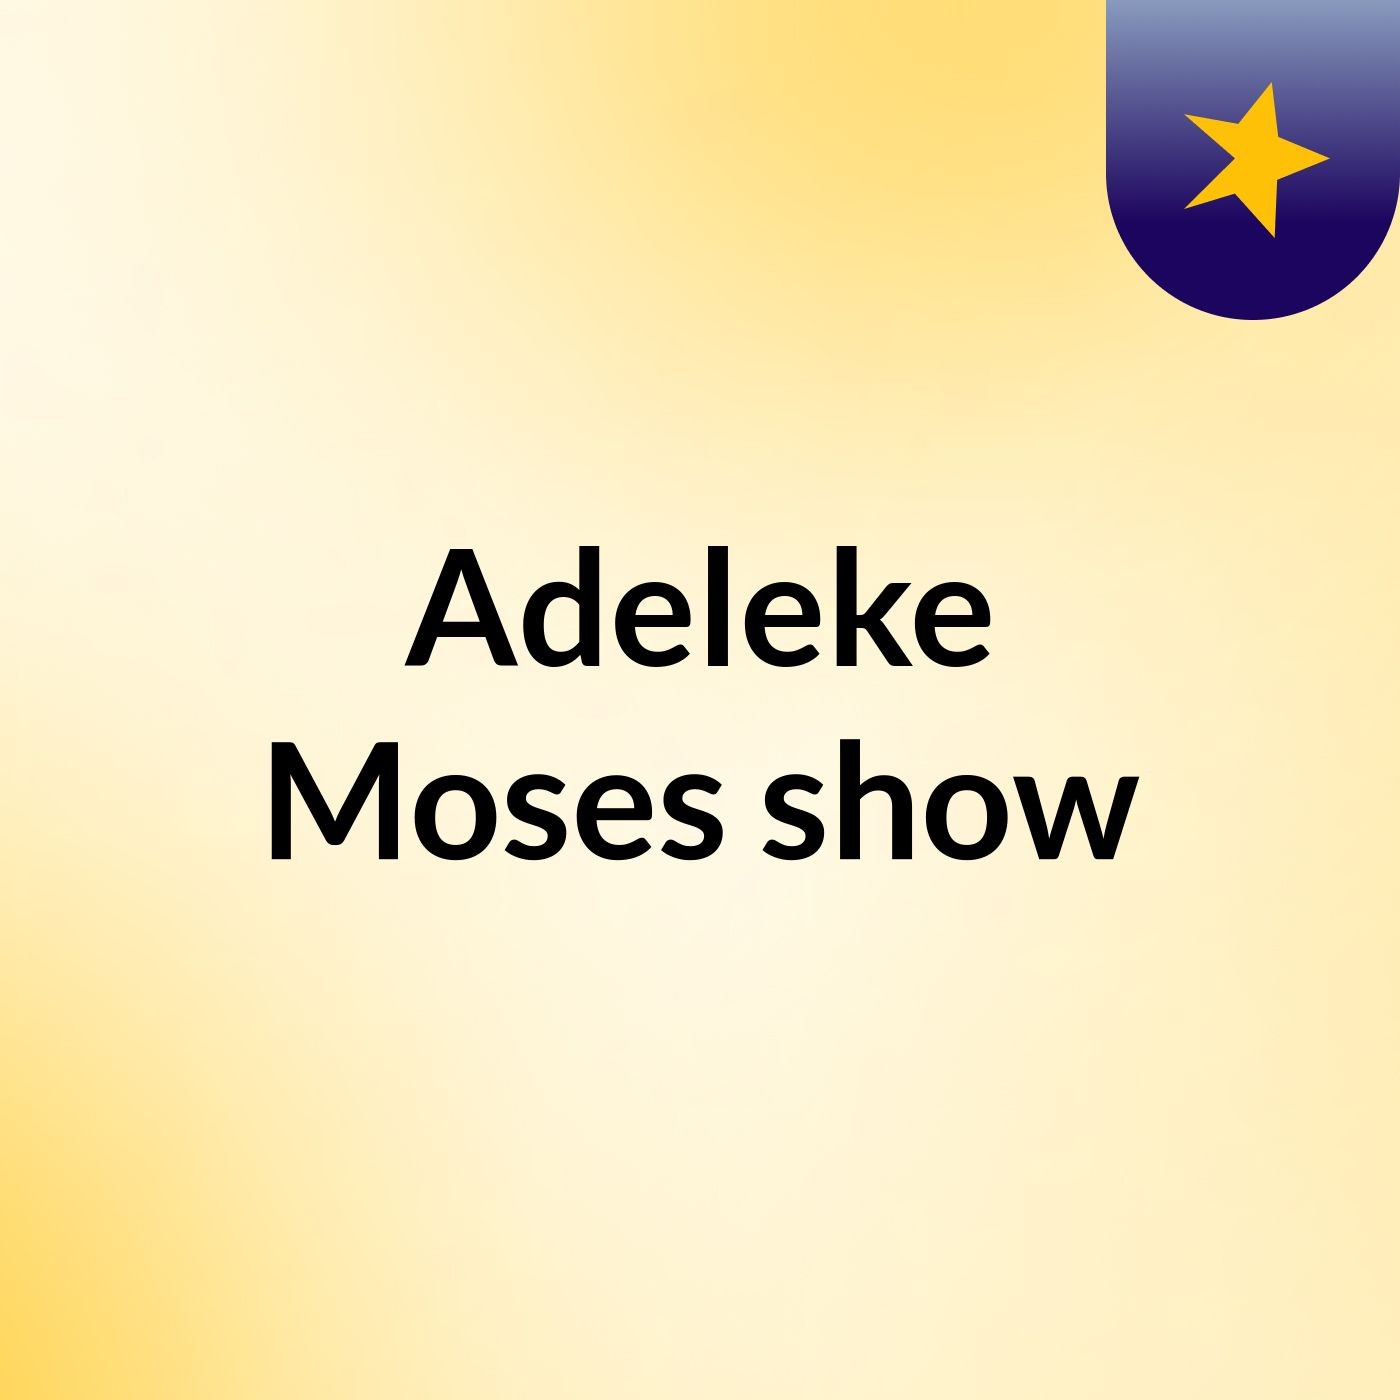 Adeleke Moses' show